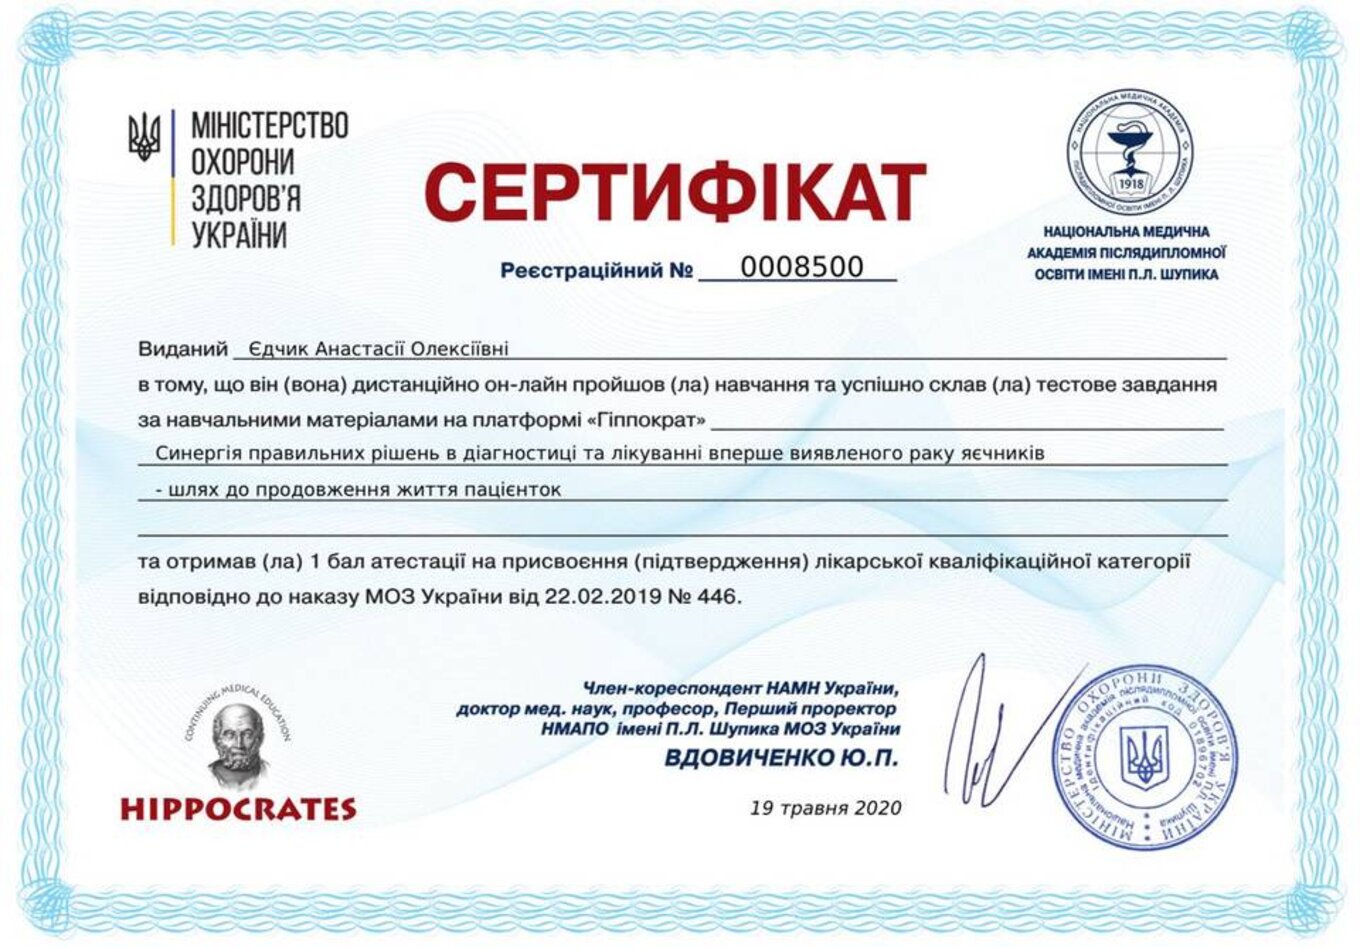 certificates/yedchik-anastasiya-oleksiyivna/erc-edchik-cert-17.jpg